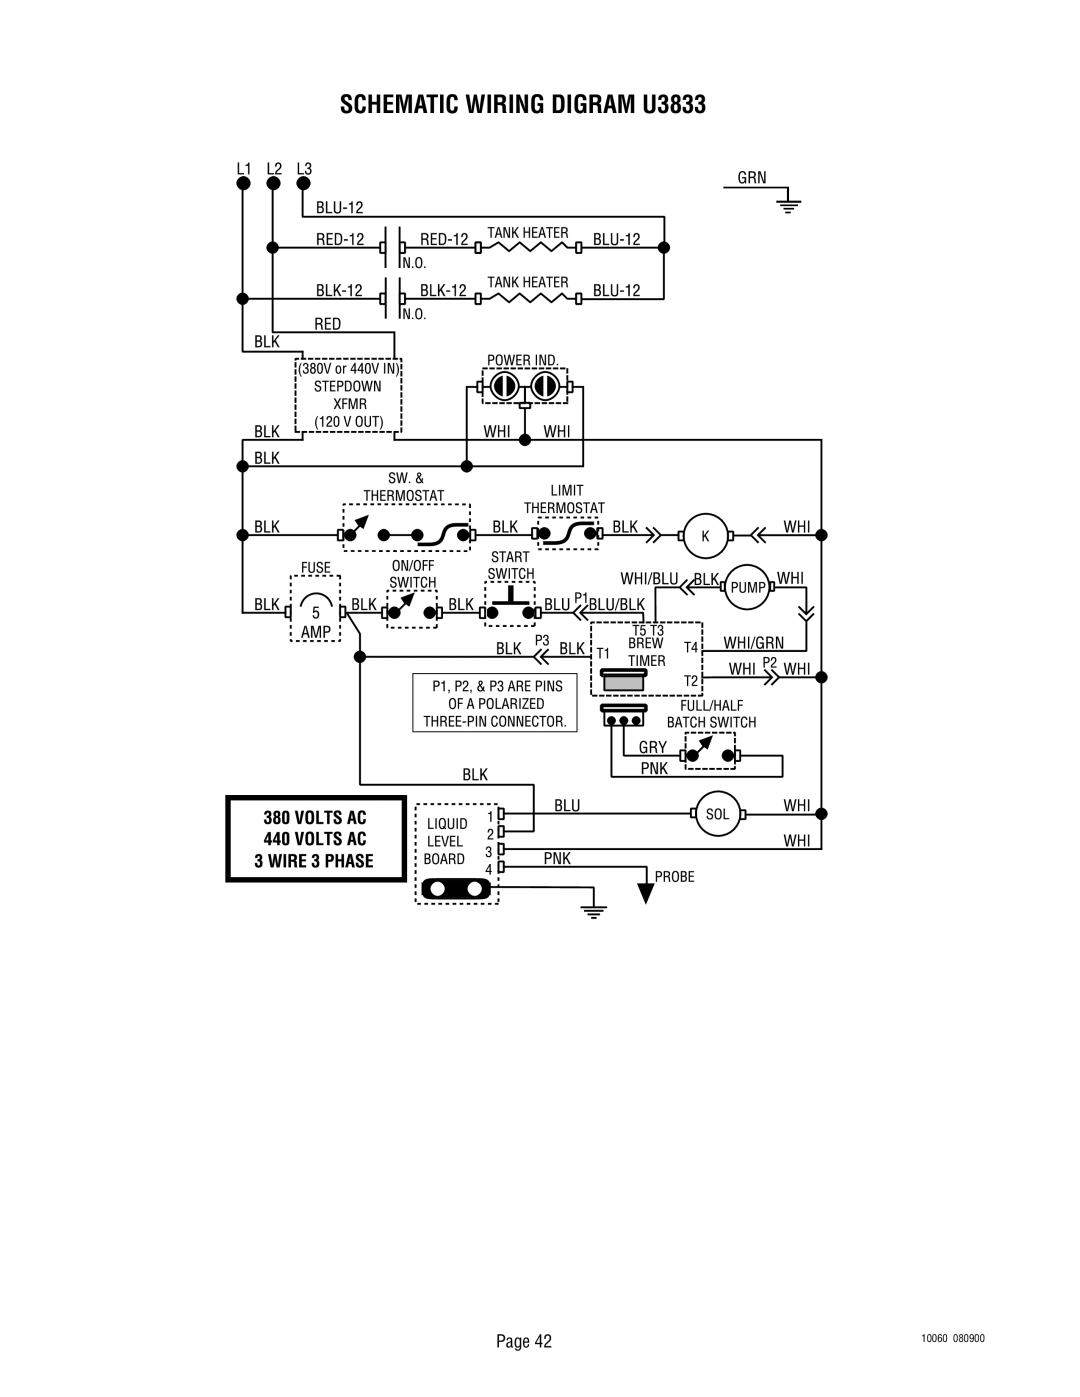 Bunn U3A service manual SCHEMATIC WIRING DIGRAM U3833, Page, 10060, 080900 